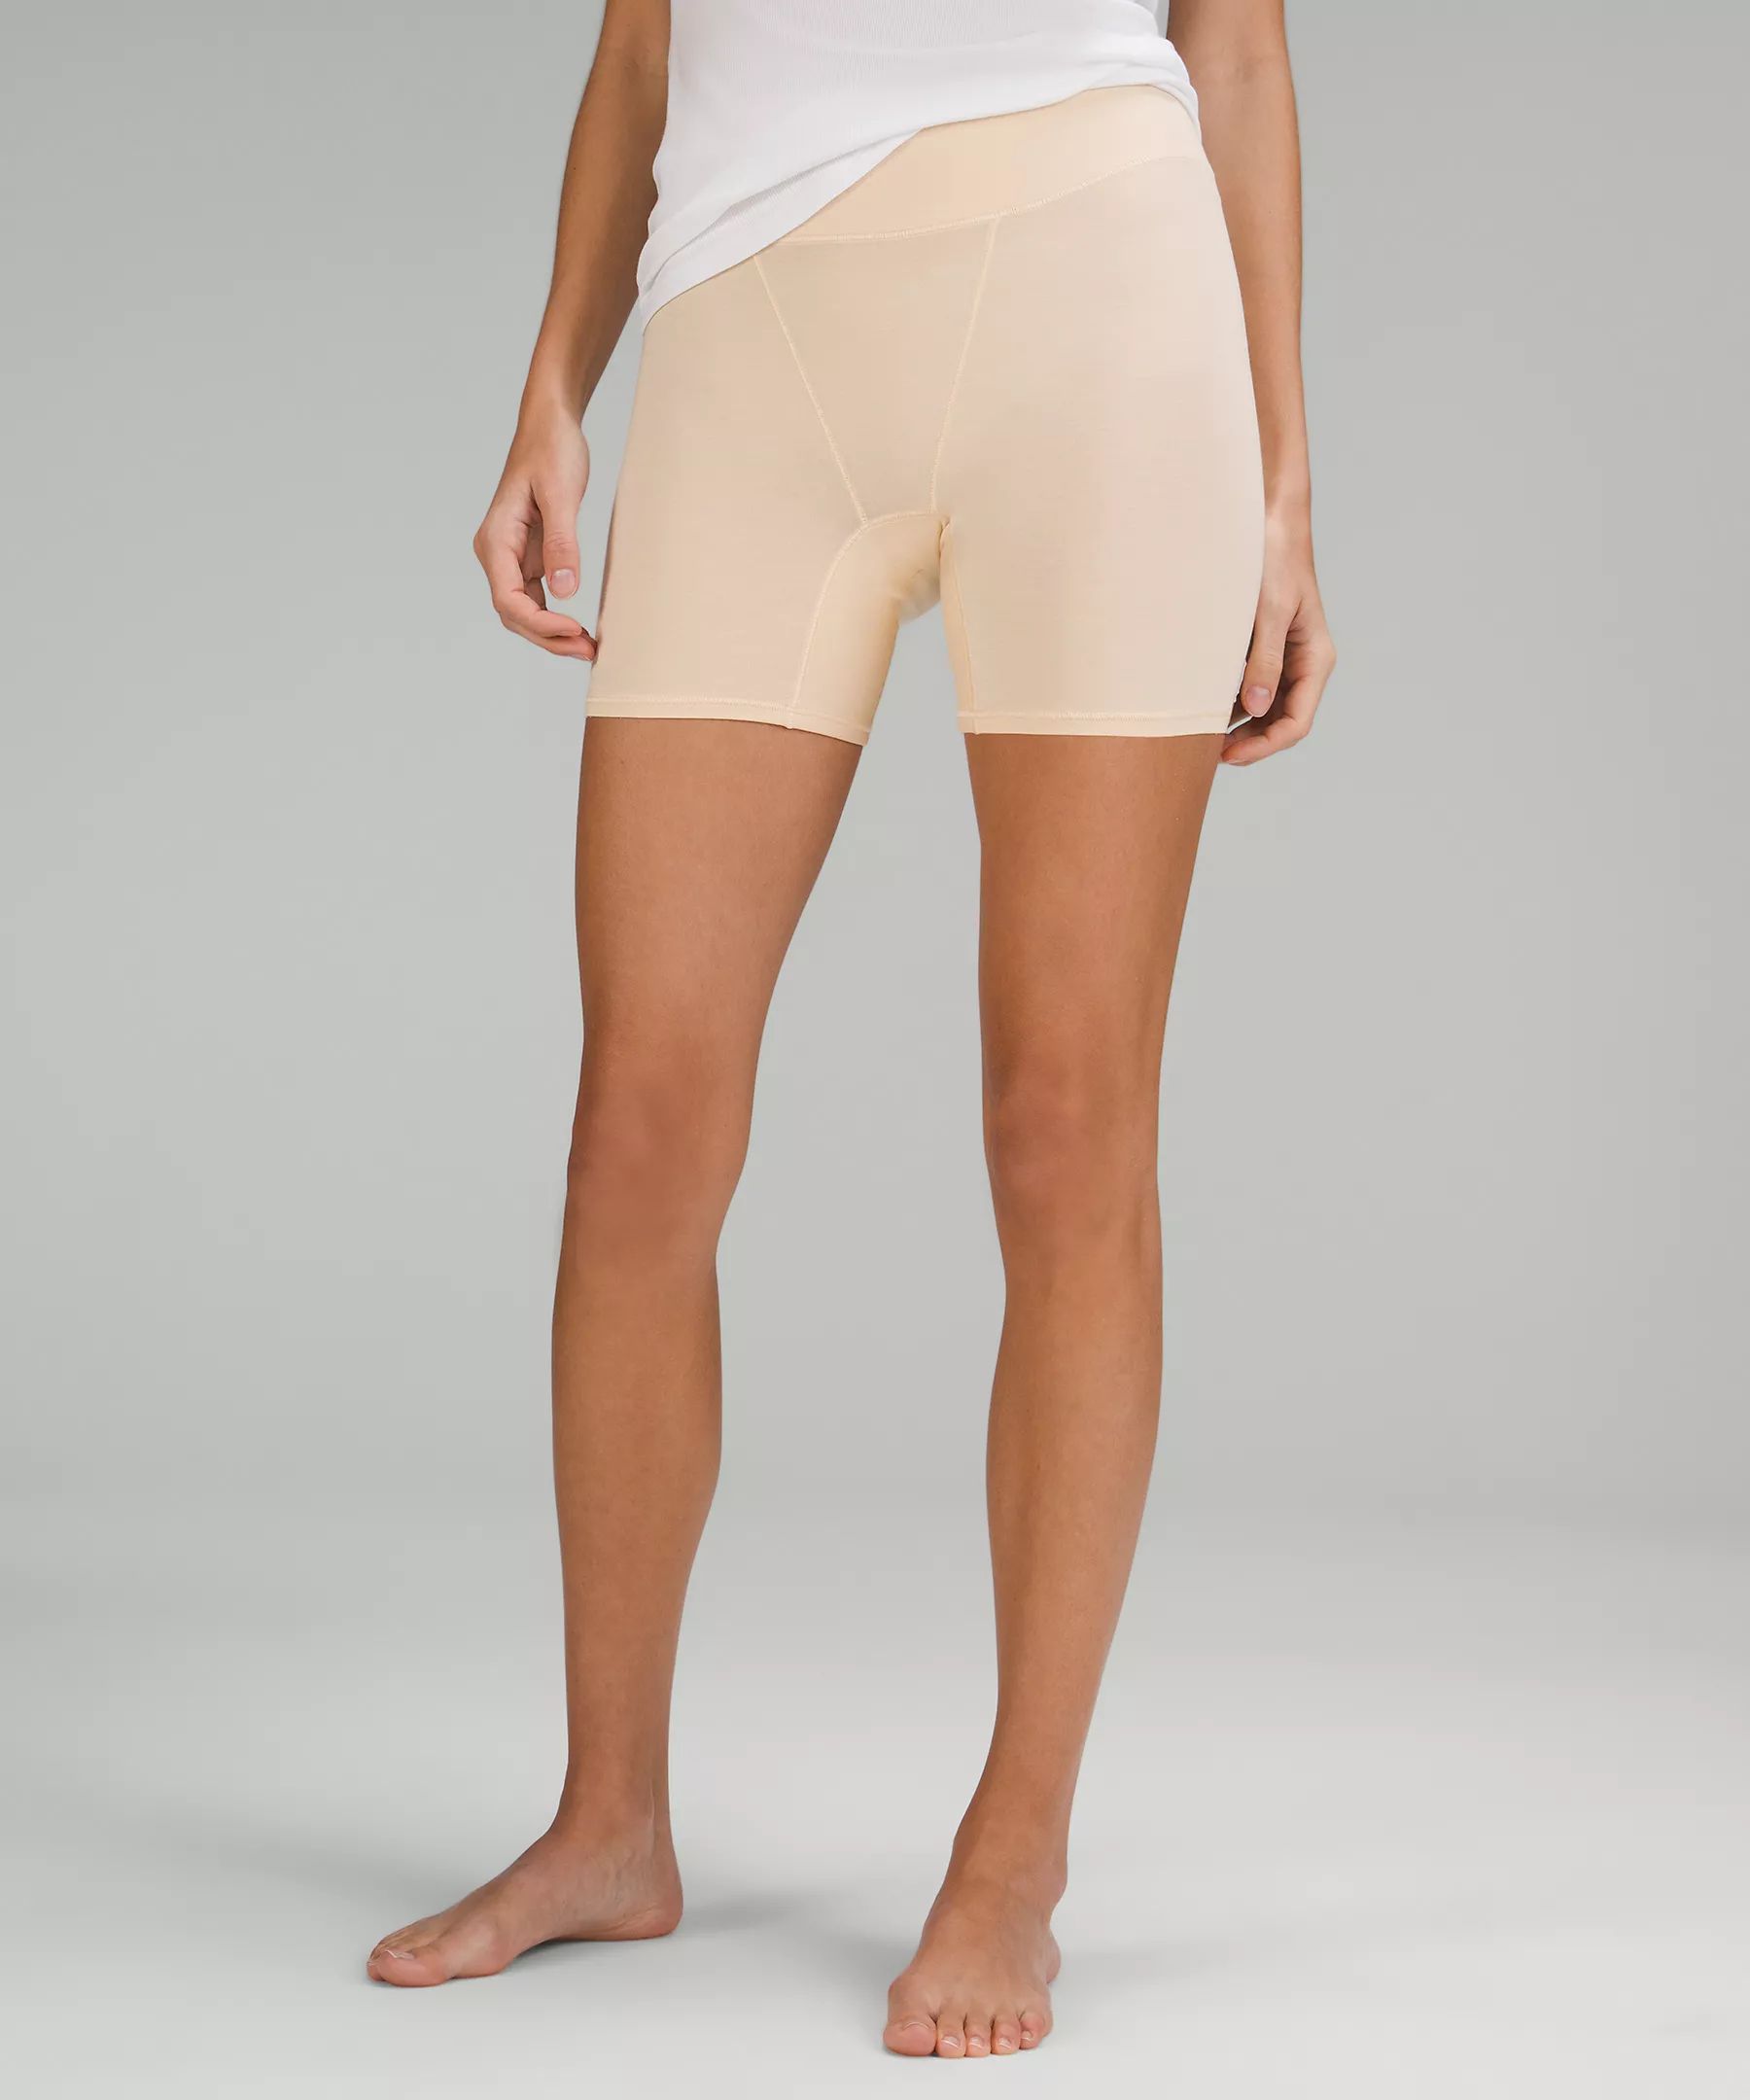 UnderEase Super-High-Rise Shortie Underwear 2 Pack | Lululemon (US)